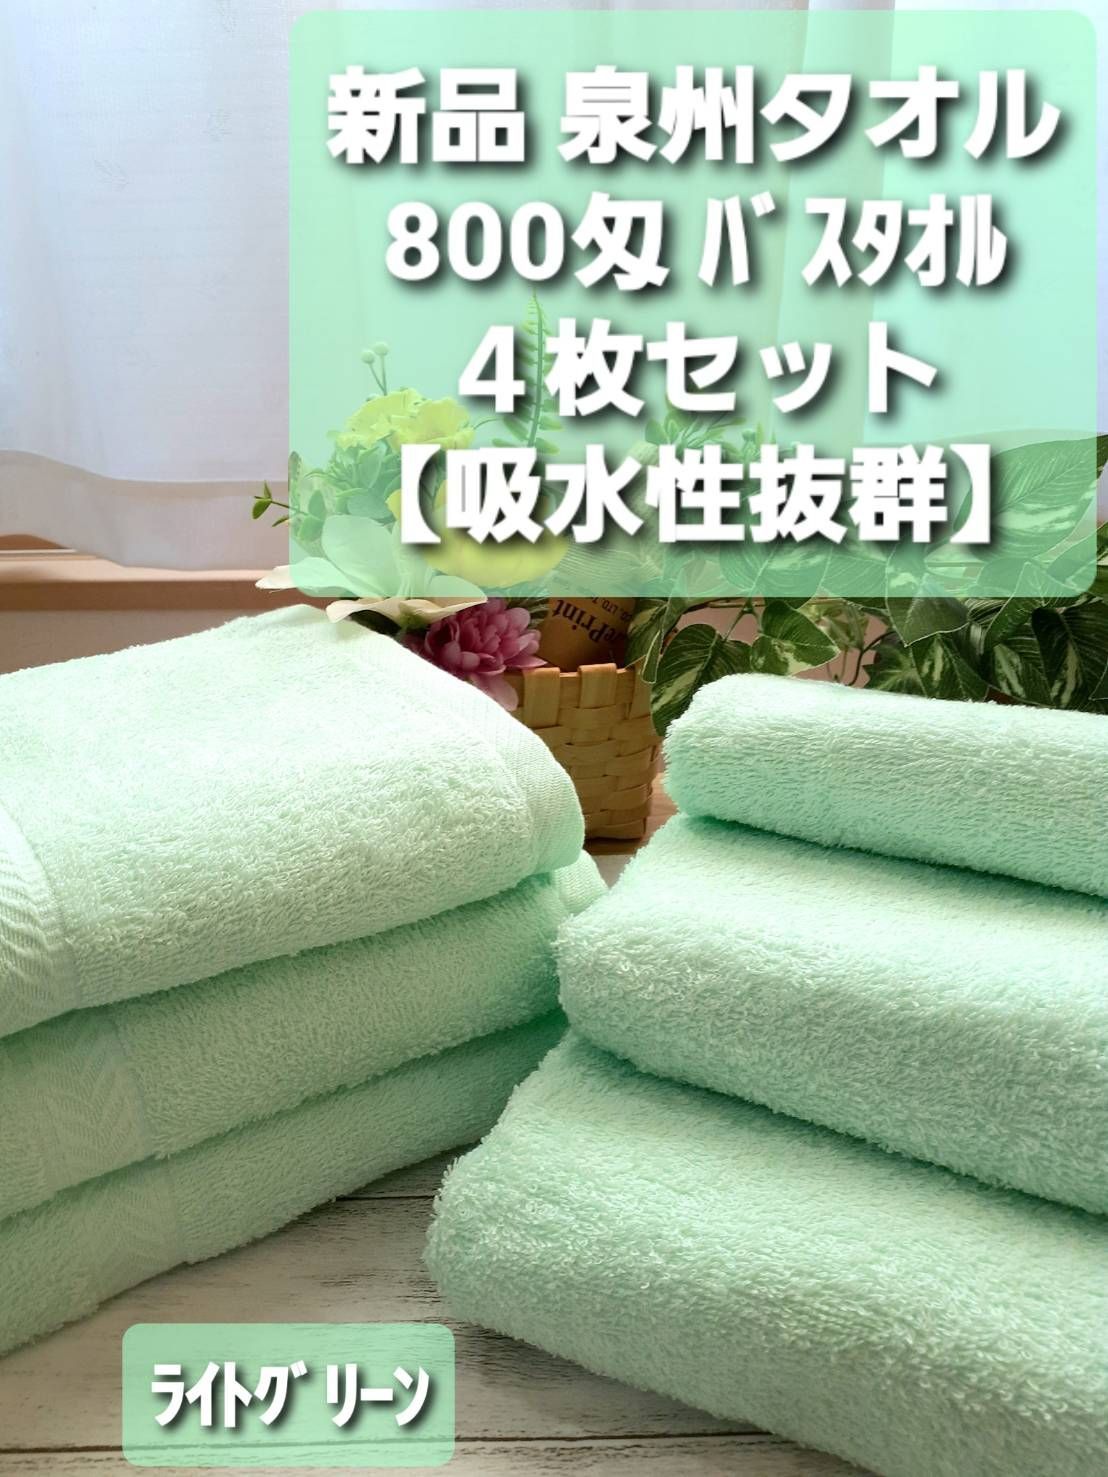 泉州タオル 800匁ライトグリーンバスタオルセット6枚組 タオル新品 まとめ売りタオル・バス用品